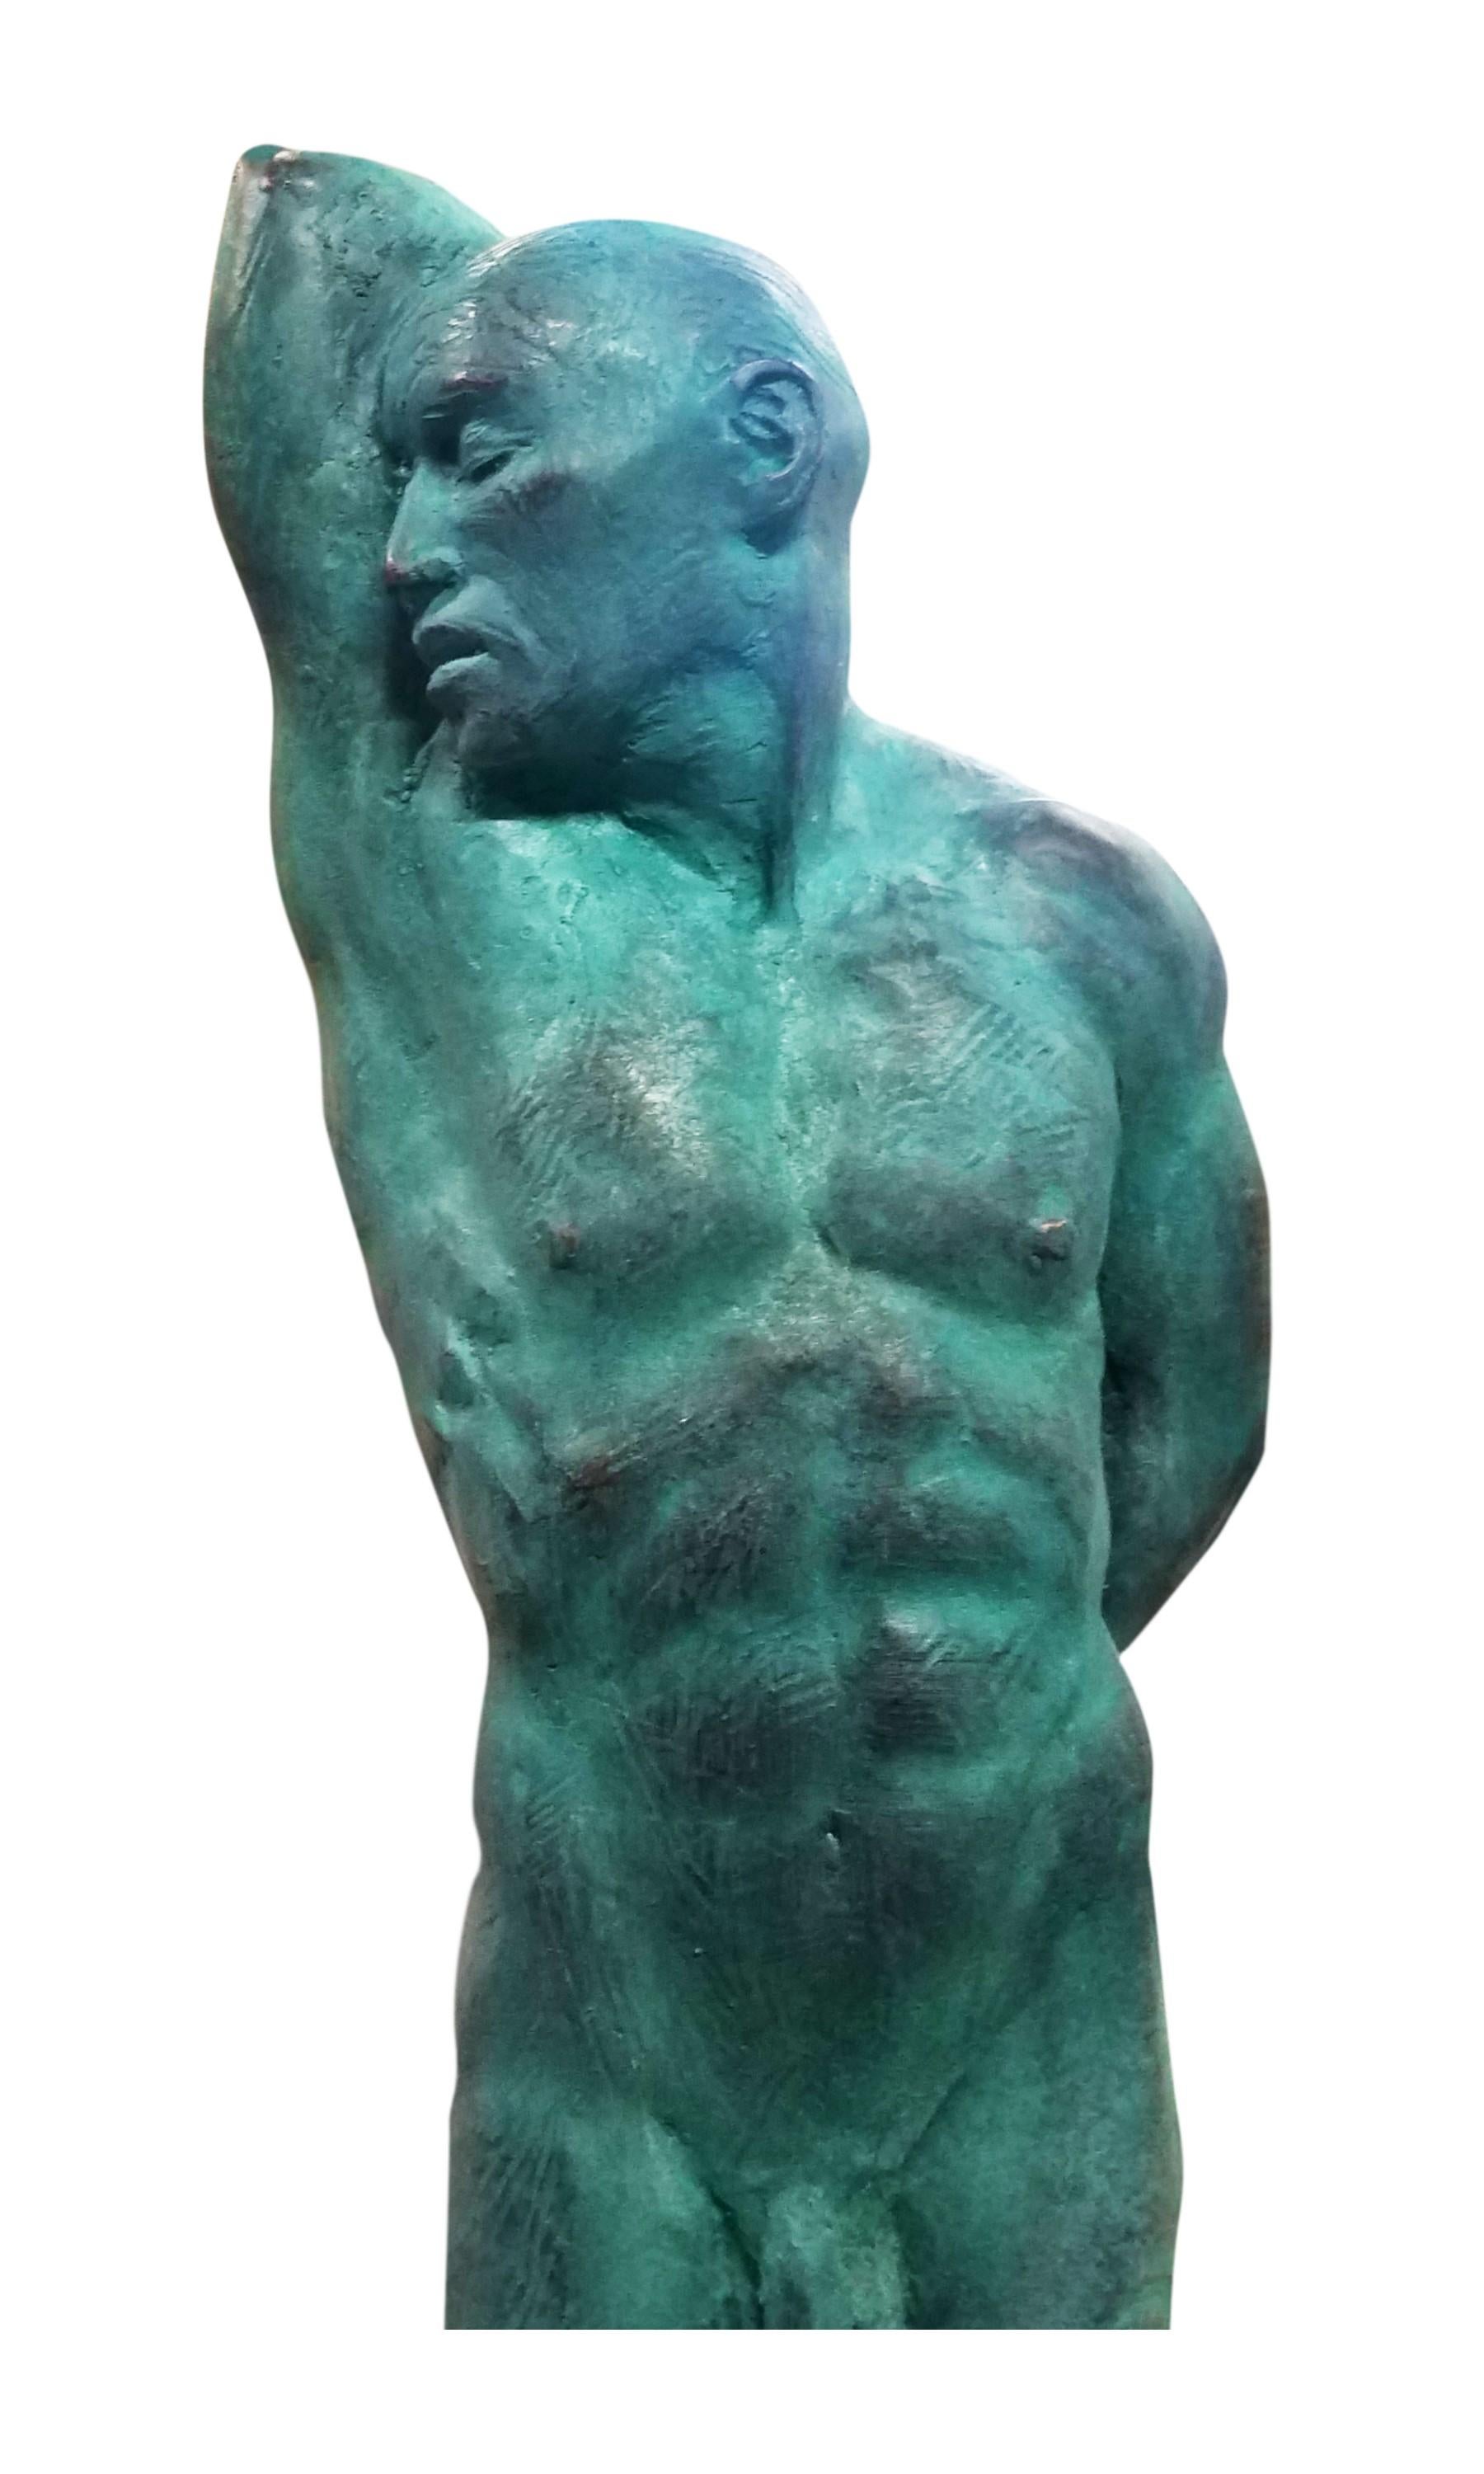 Il s'agit d'une extraordinaire sculpture en bronze d'un nu masculin classique réalisée par l'artiste Dean Kugler. L'attention portée aux détails et la compréhension totale de la figure humaine sont évidentes. Le personnage se tient debout,